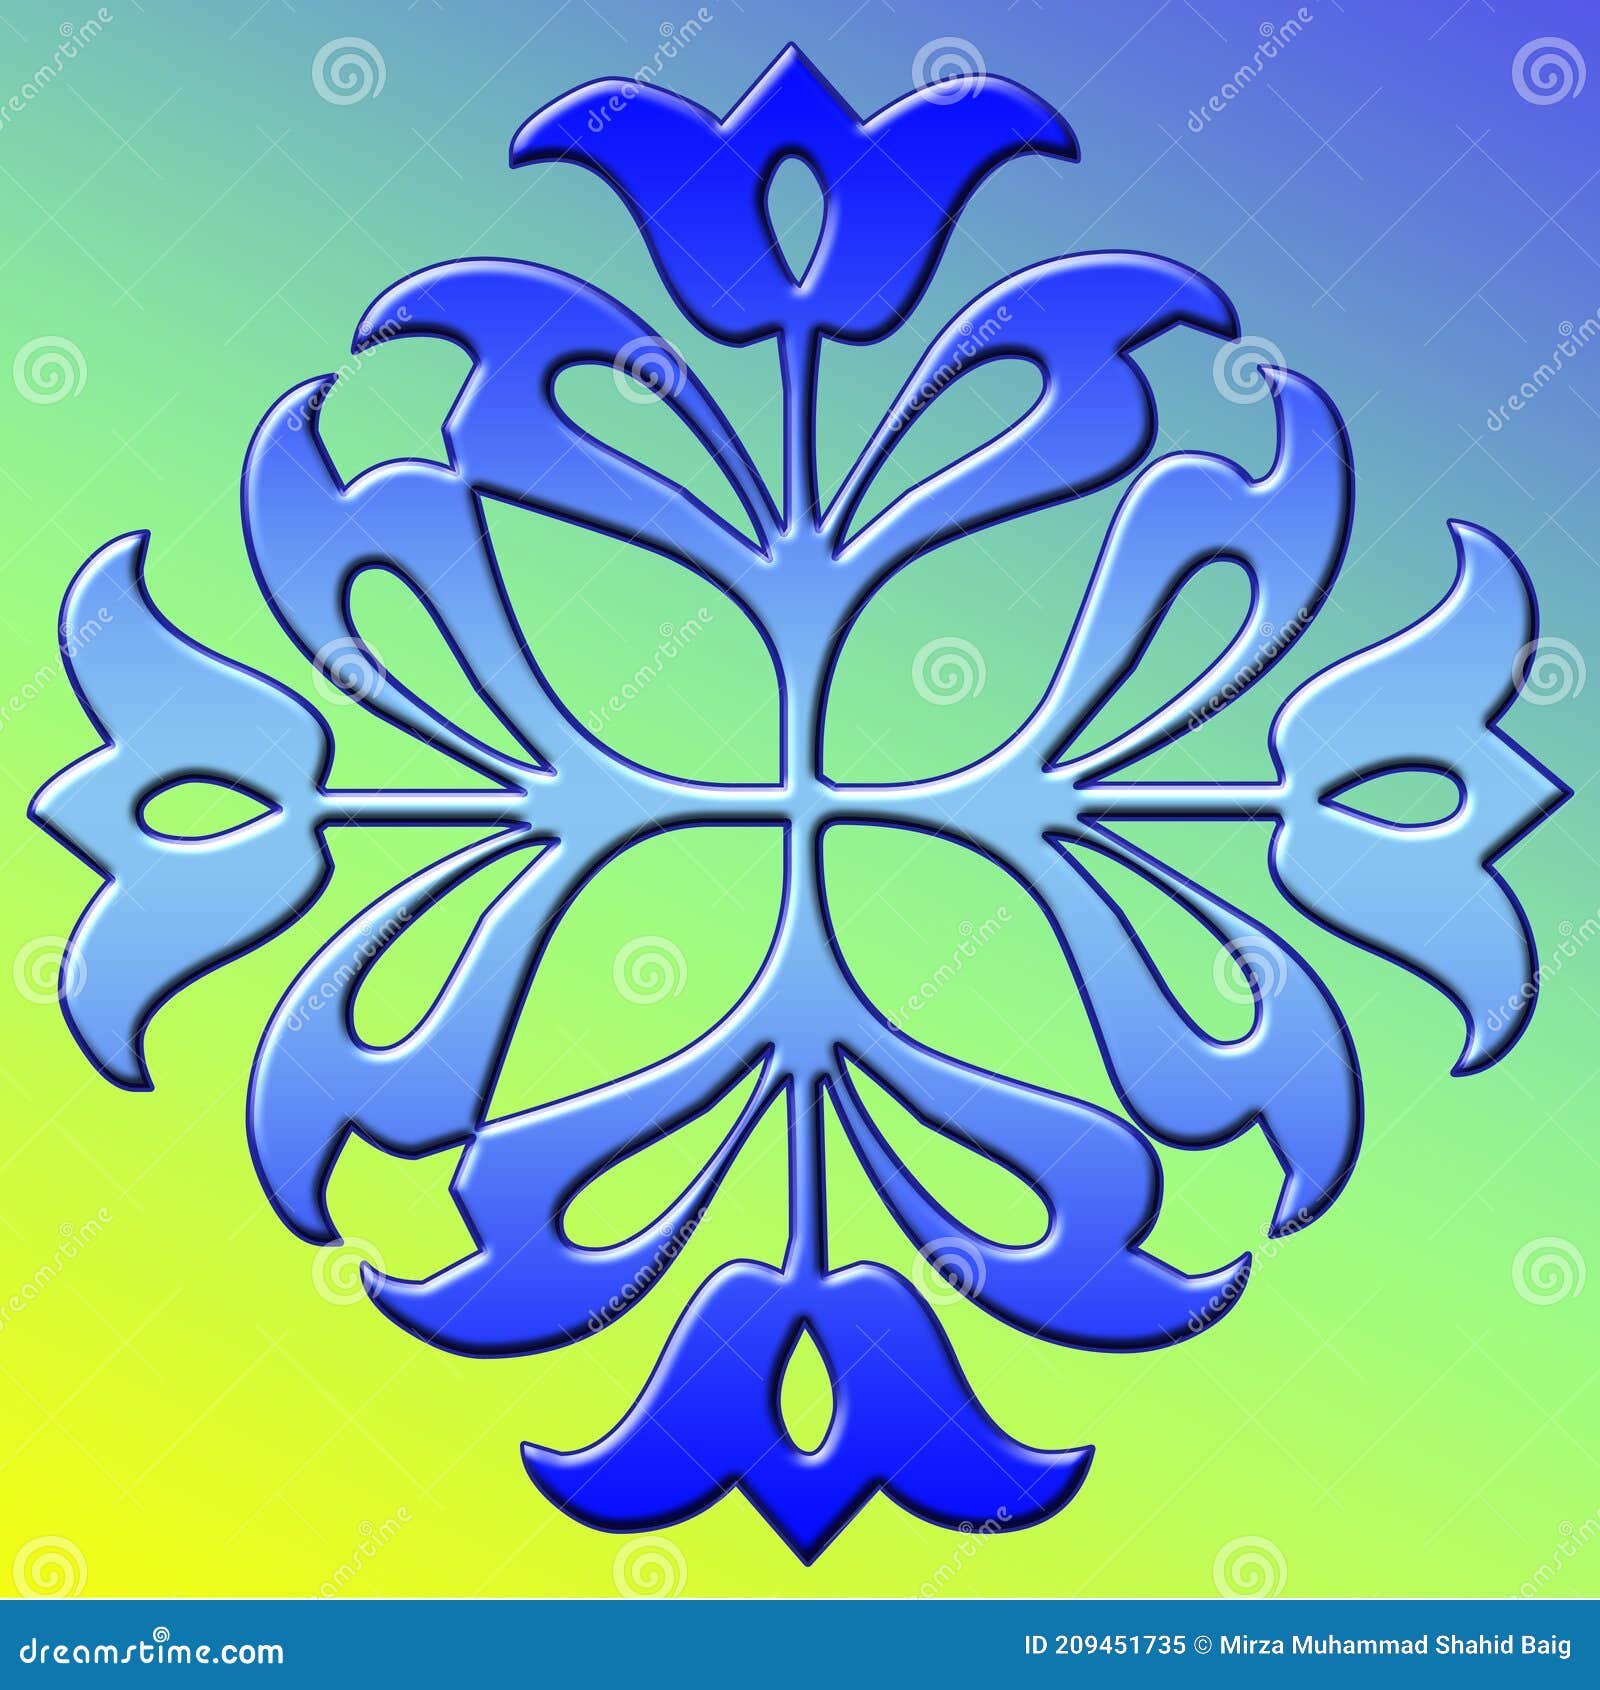 Esquema De Dibujo De Diseño De Mosaico Sin Soldadura De Gradiente Azul  Establecido7 Stock de ilustración - Ilustración de fondo, suelo: 209451735